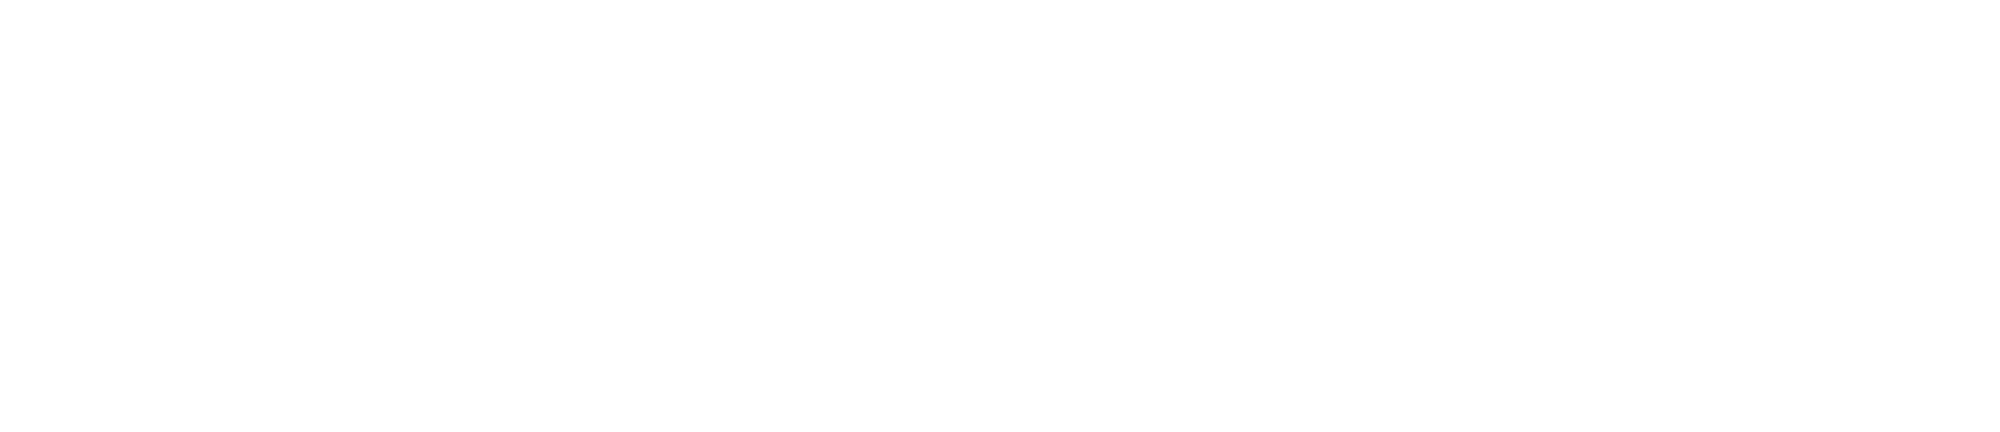 The Laparoscopic Surgeon-logo-white